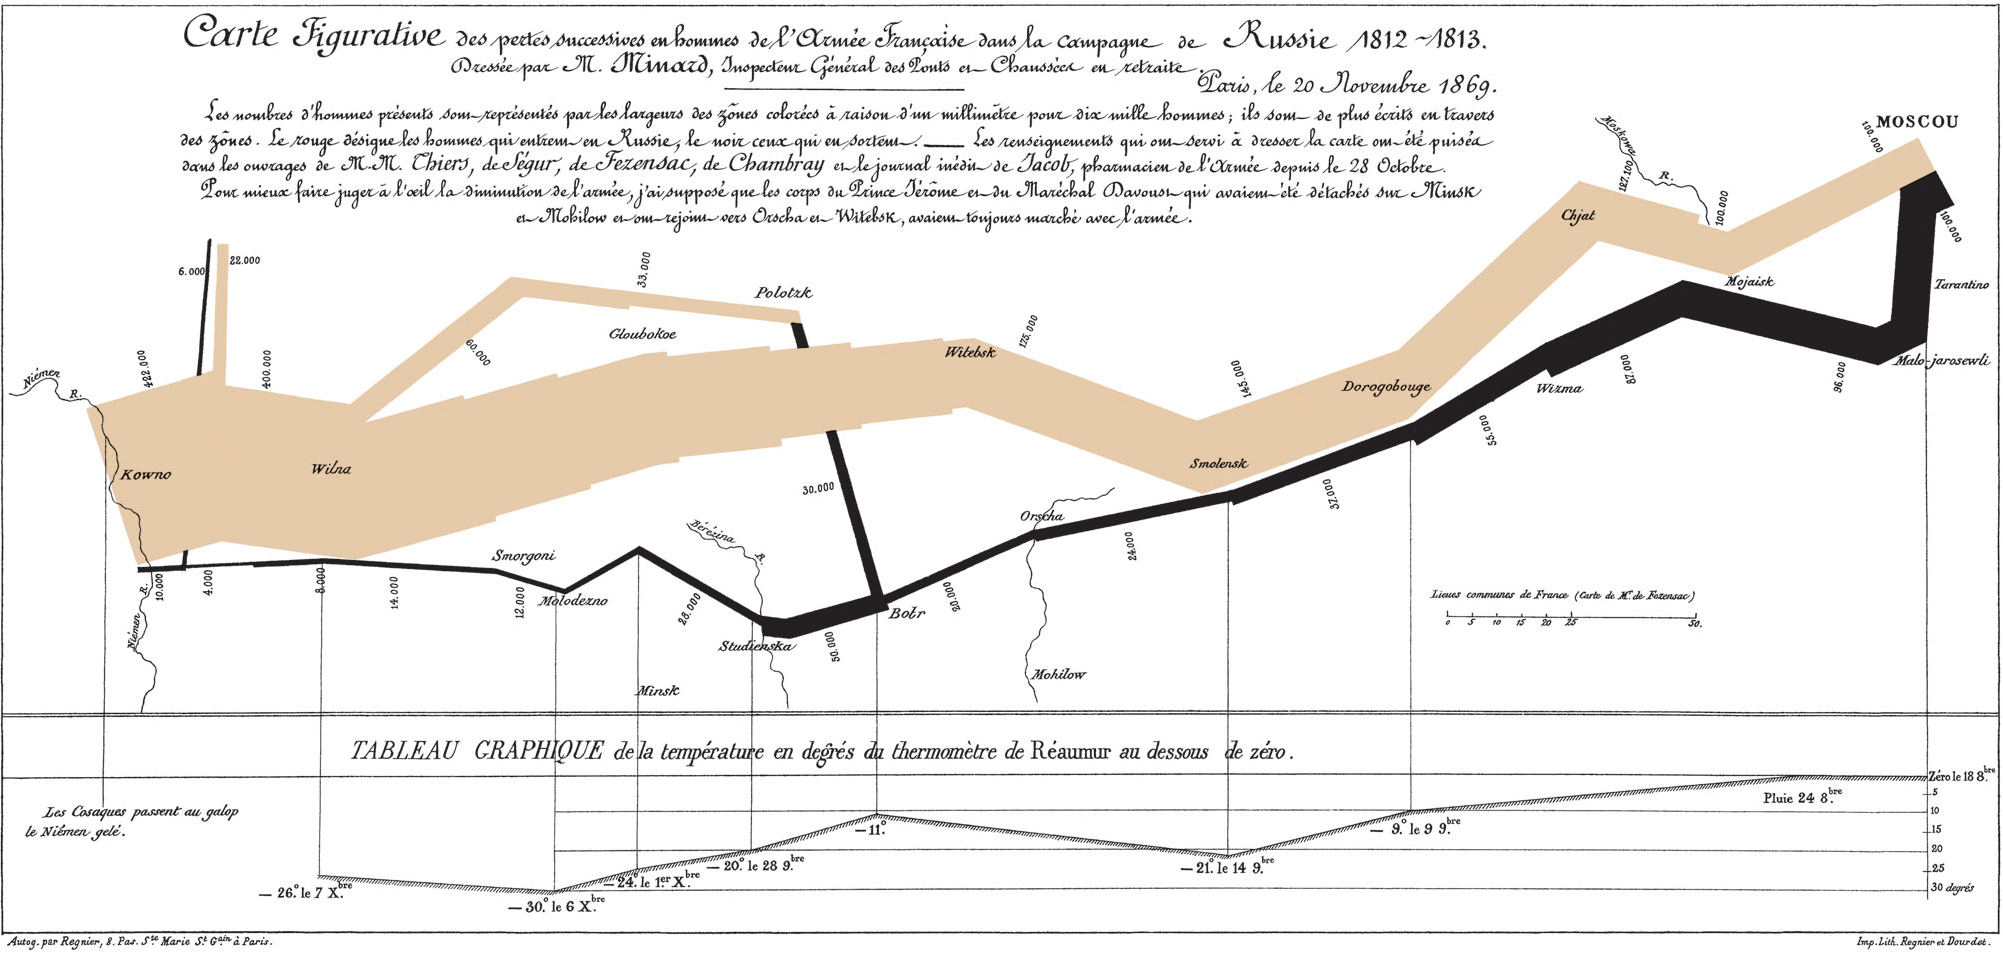 Sankey Diagram of Napoleon's Russian Campaign (Source: Wikipedia)